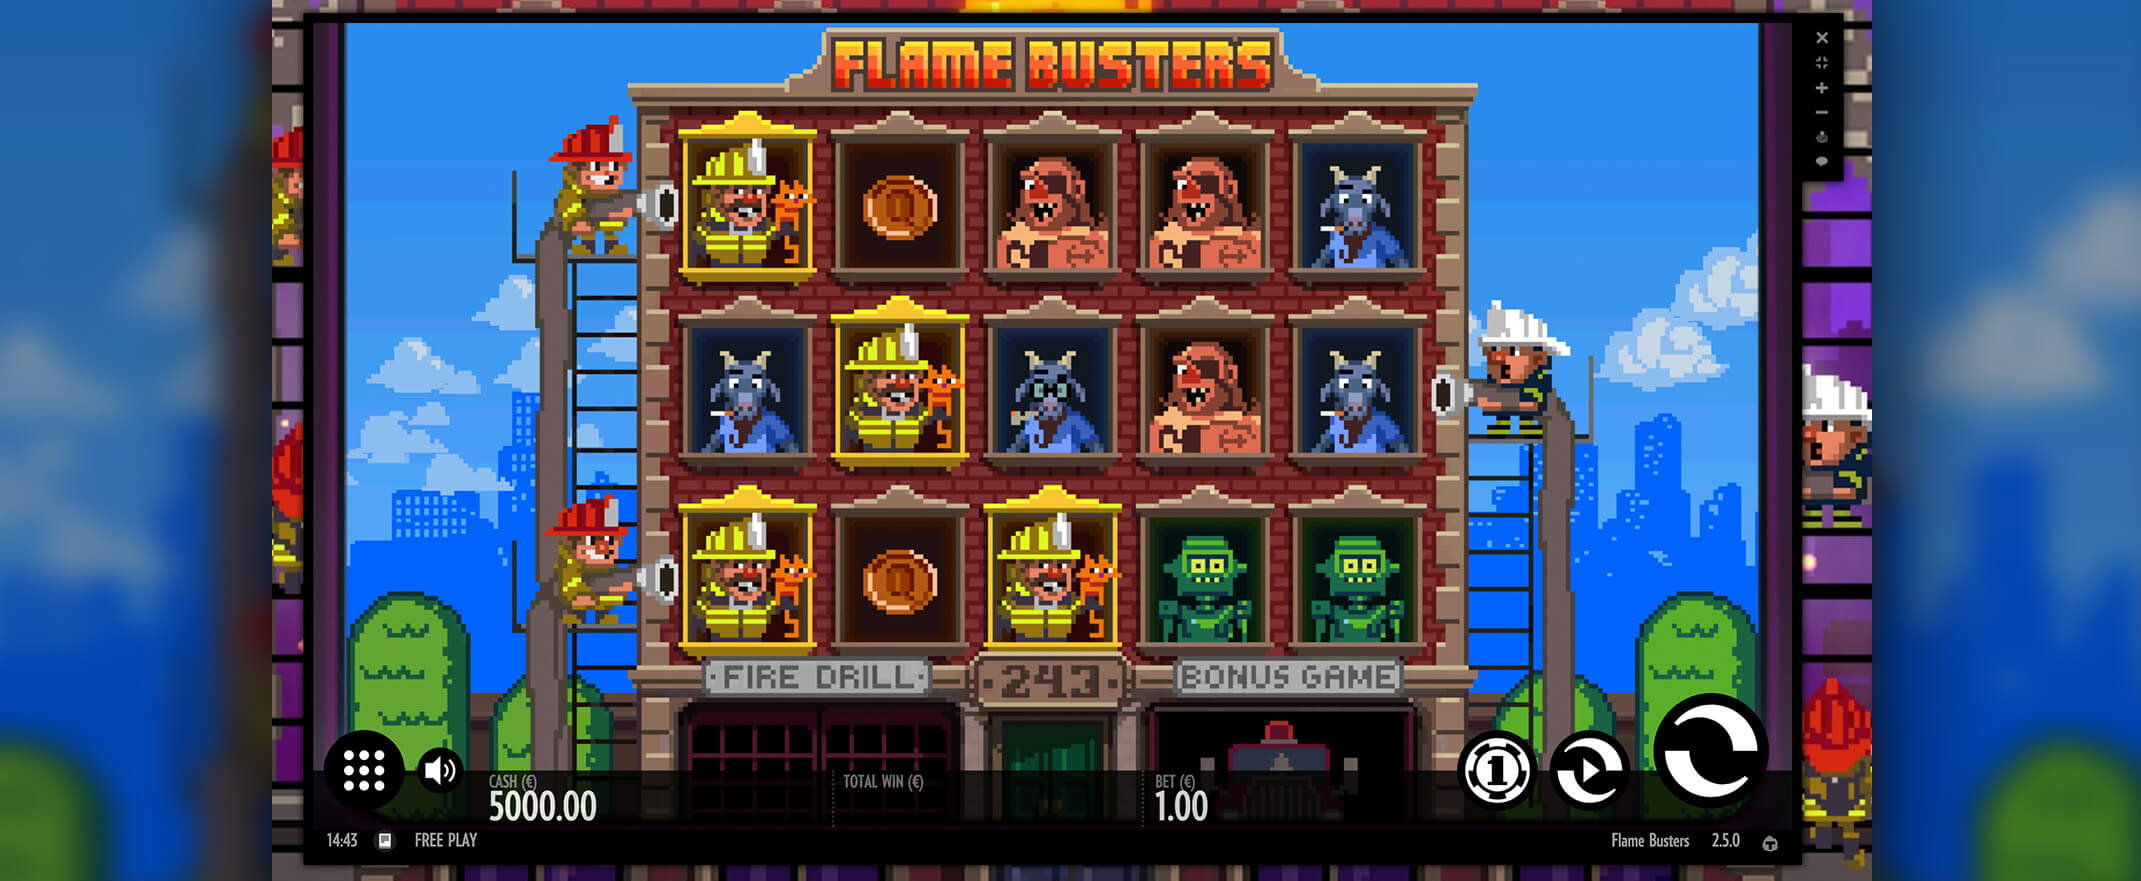 Flame Busters Spielautomaten spielen